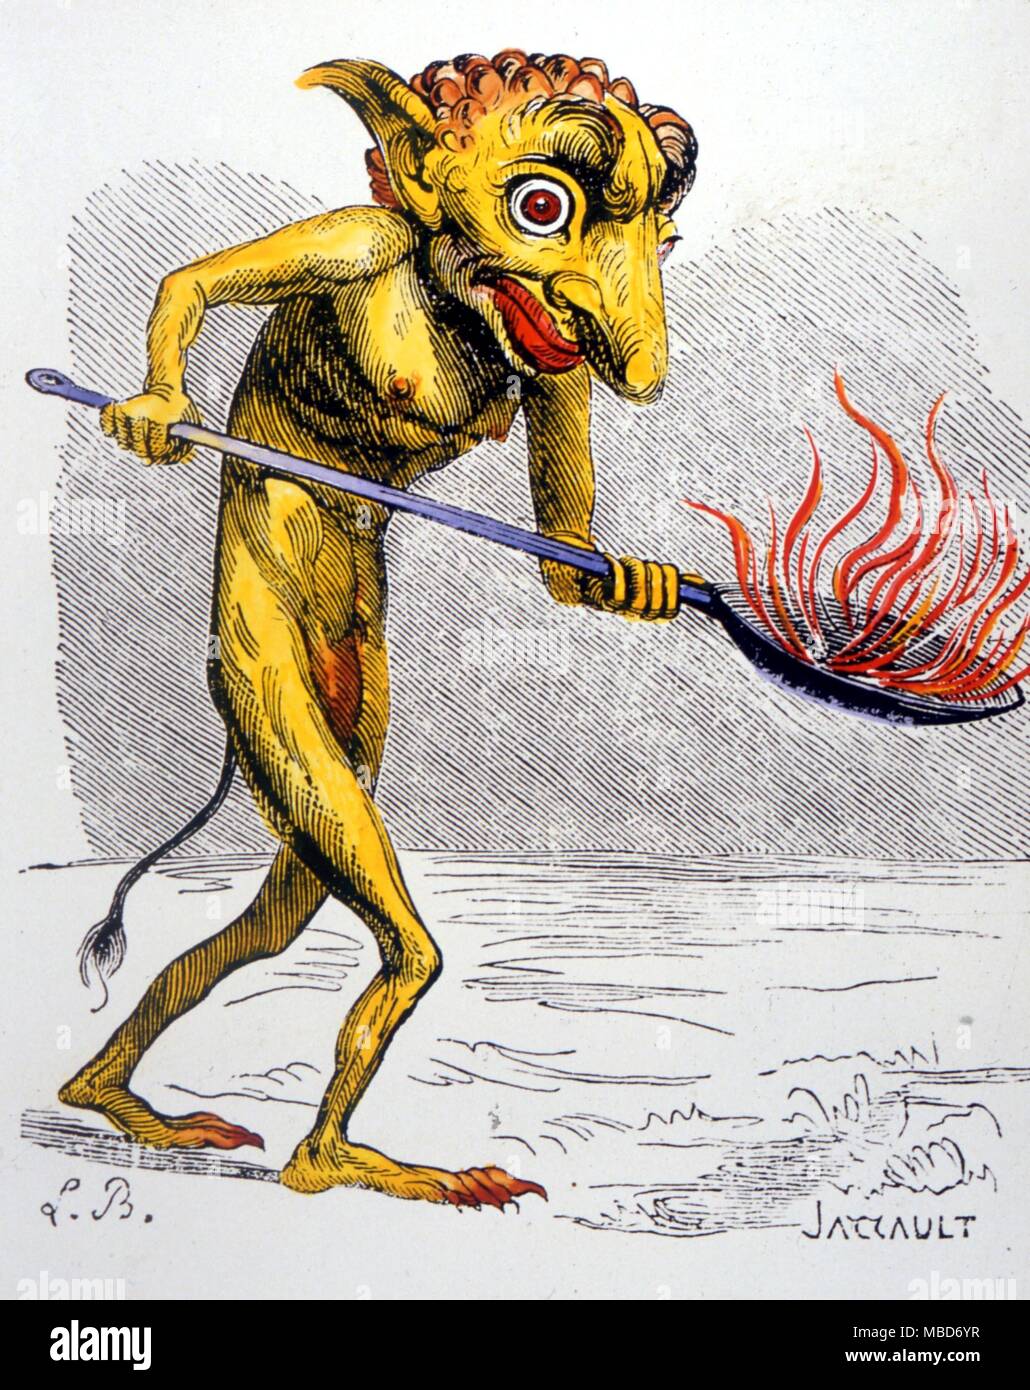 - Ukobach demonio que atiza las llamas del infierno. De Collin de Plancy's Dictionnaire Infernal - 1863 edition Foto de stock